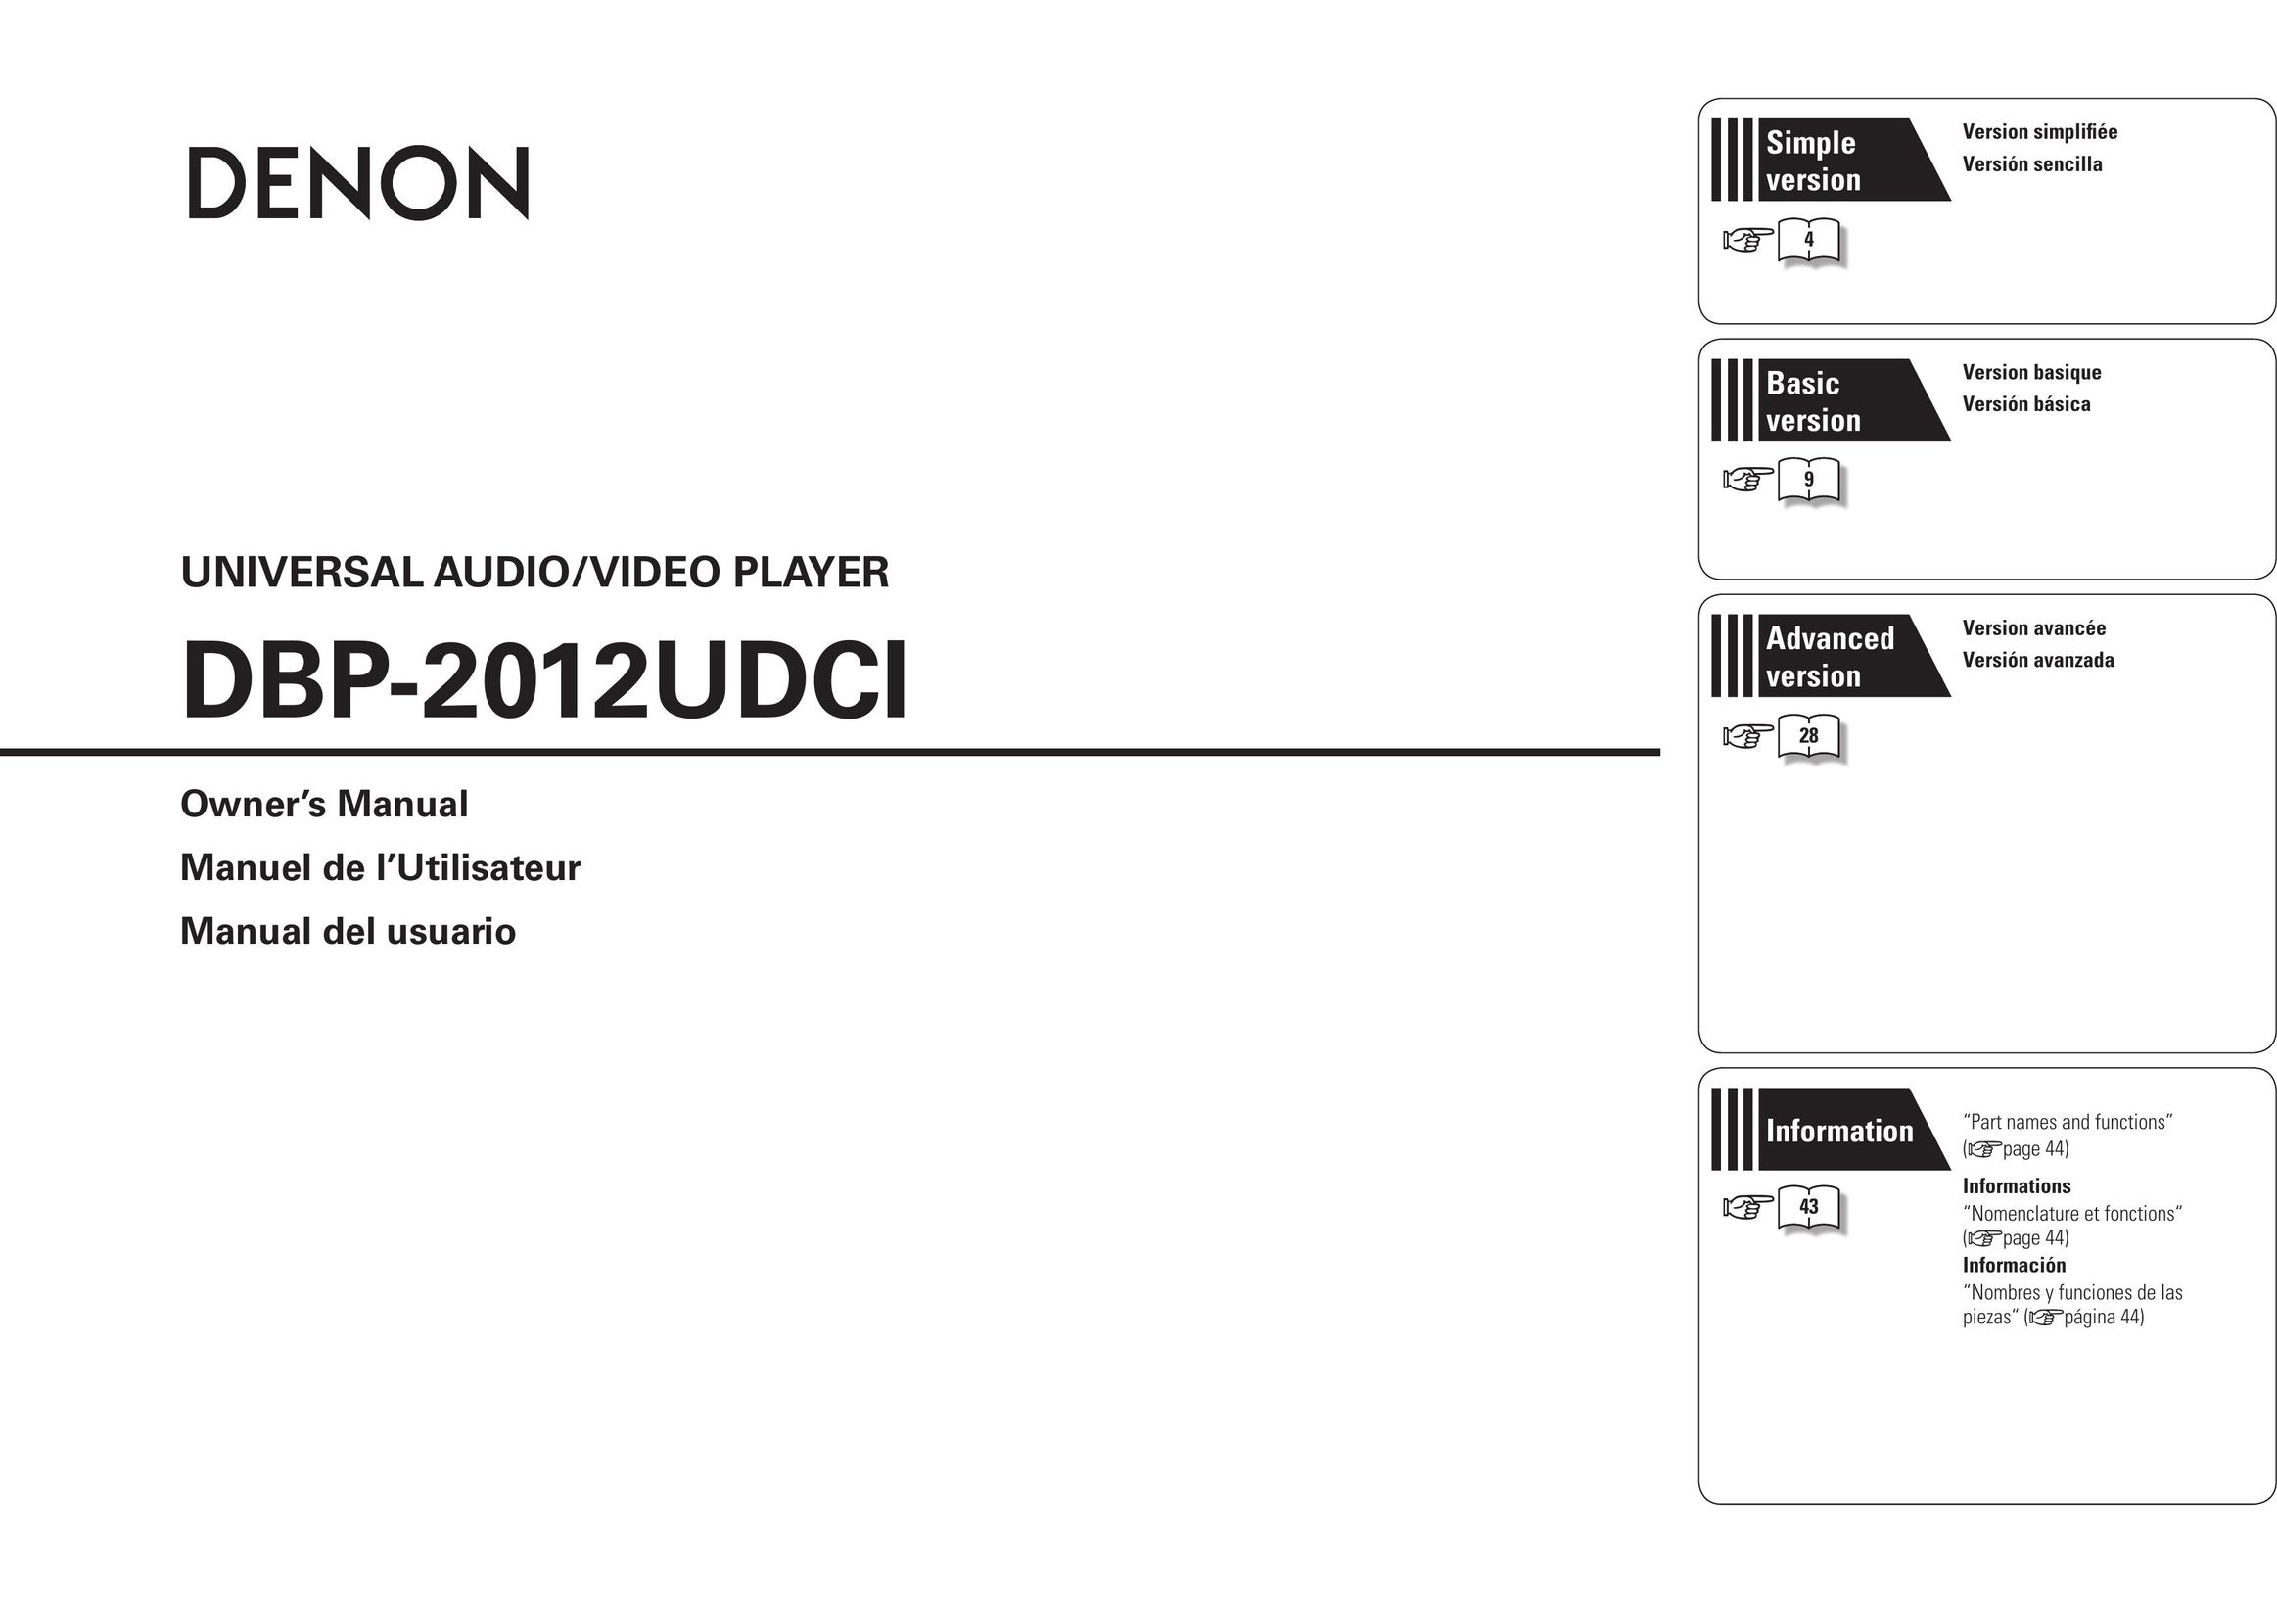 Denon DBP-2012UDCI DVD Player User Manual